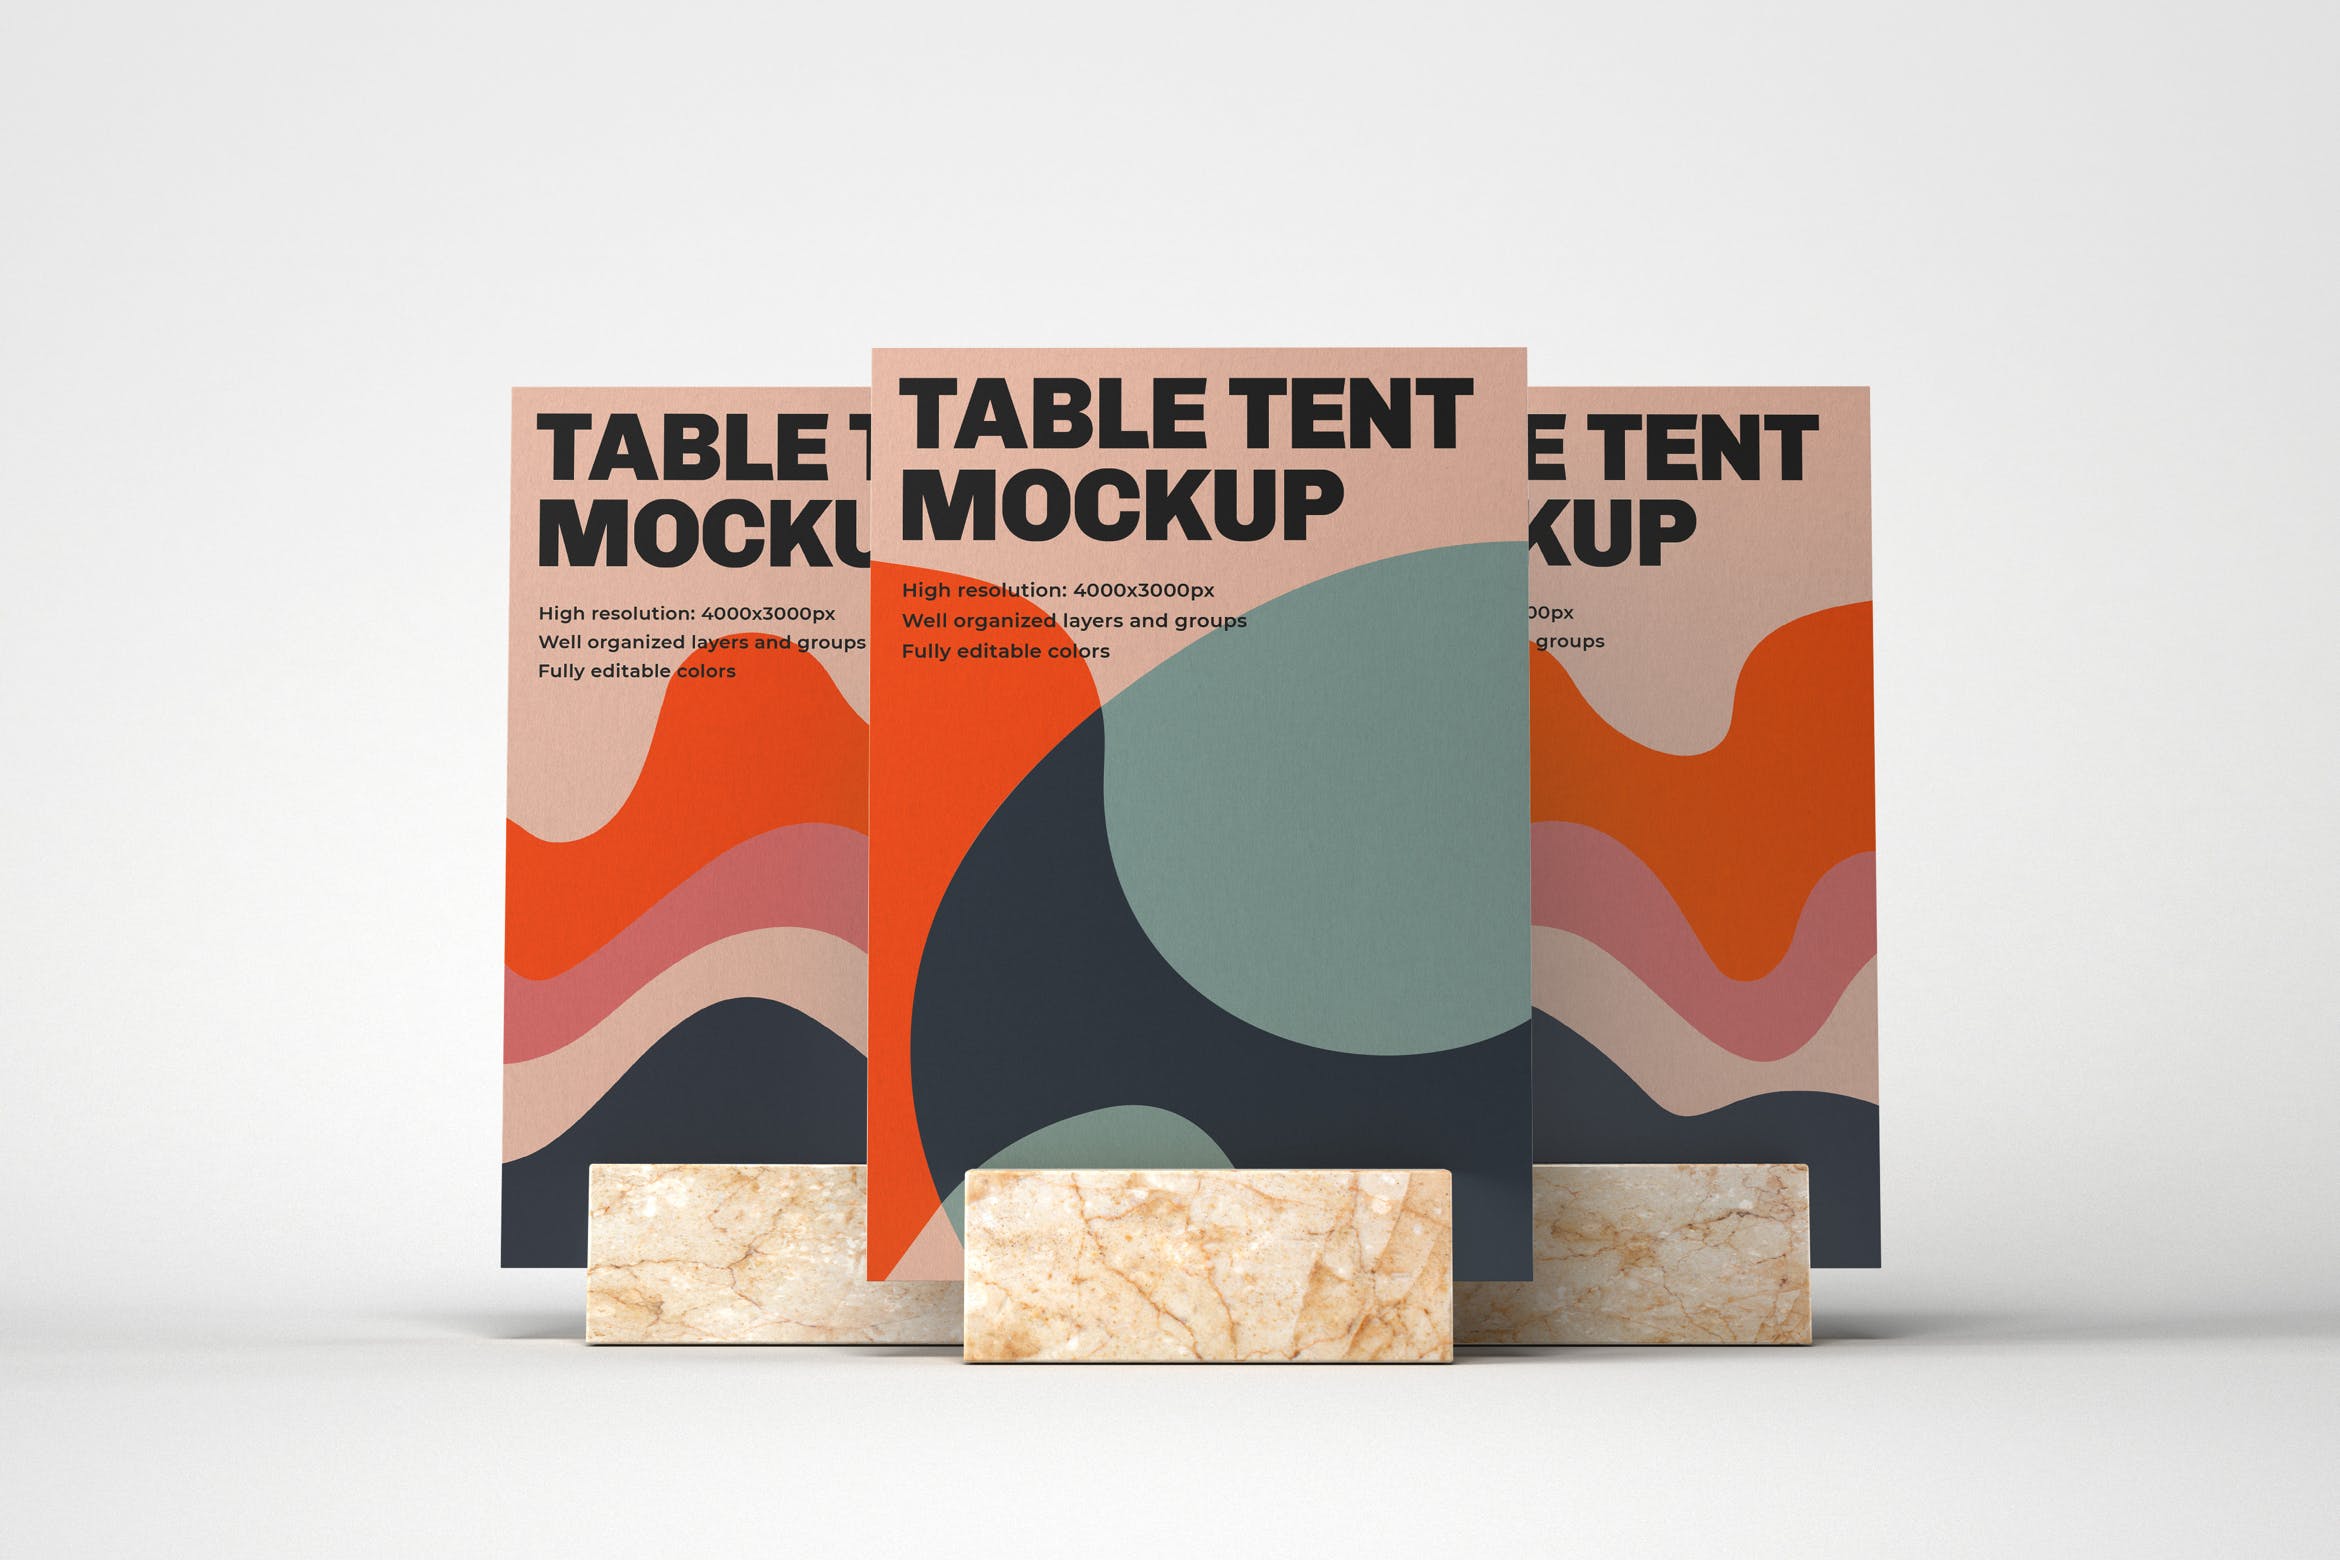 餐桌牌大理石底座&桌号牌效果图展示正视图样机模板 Table Tent Mockup设计素材模板